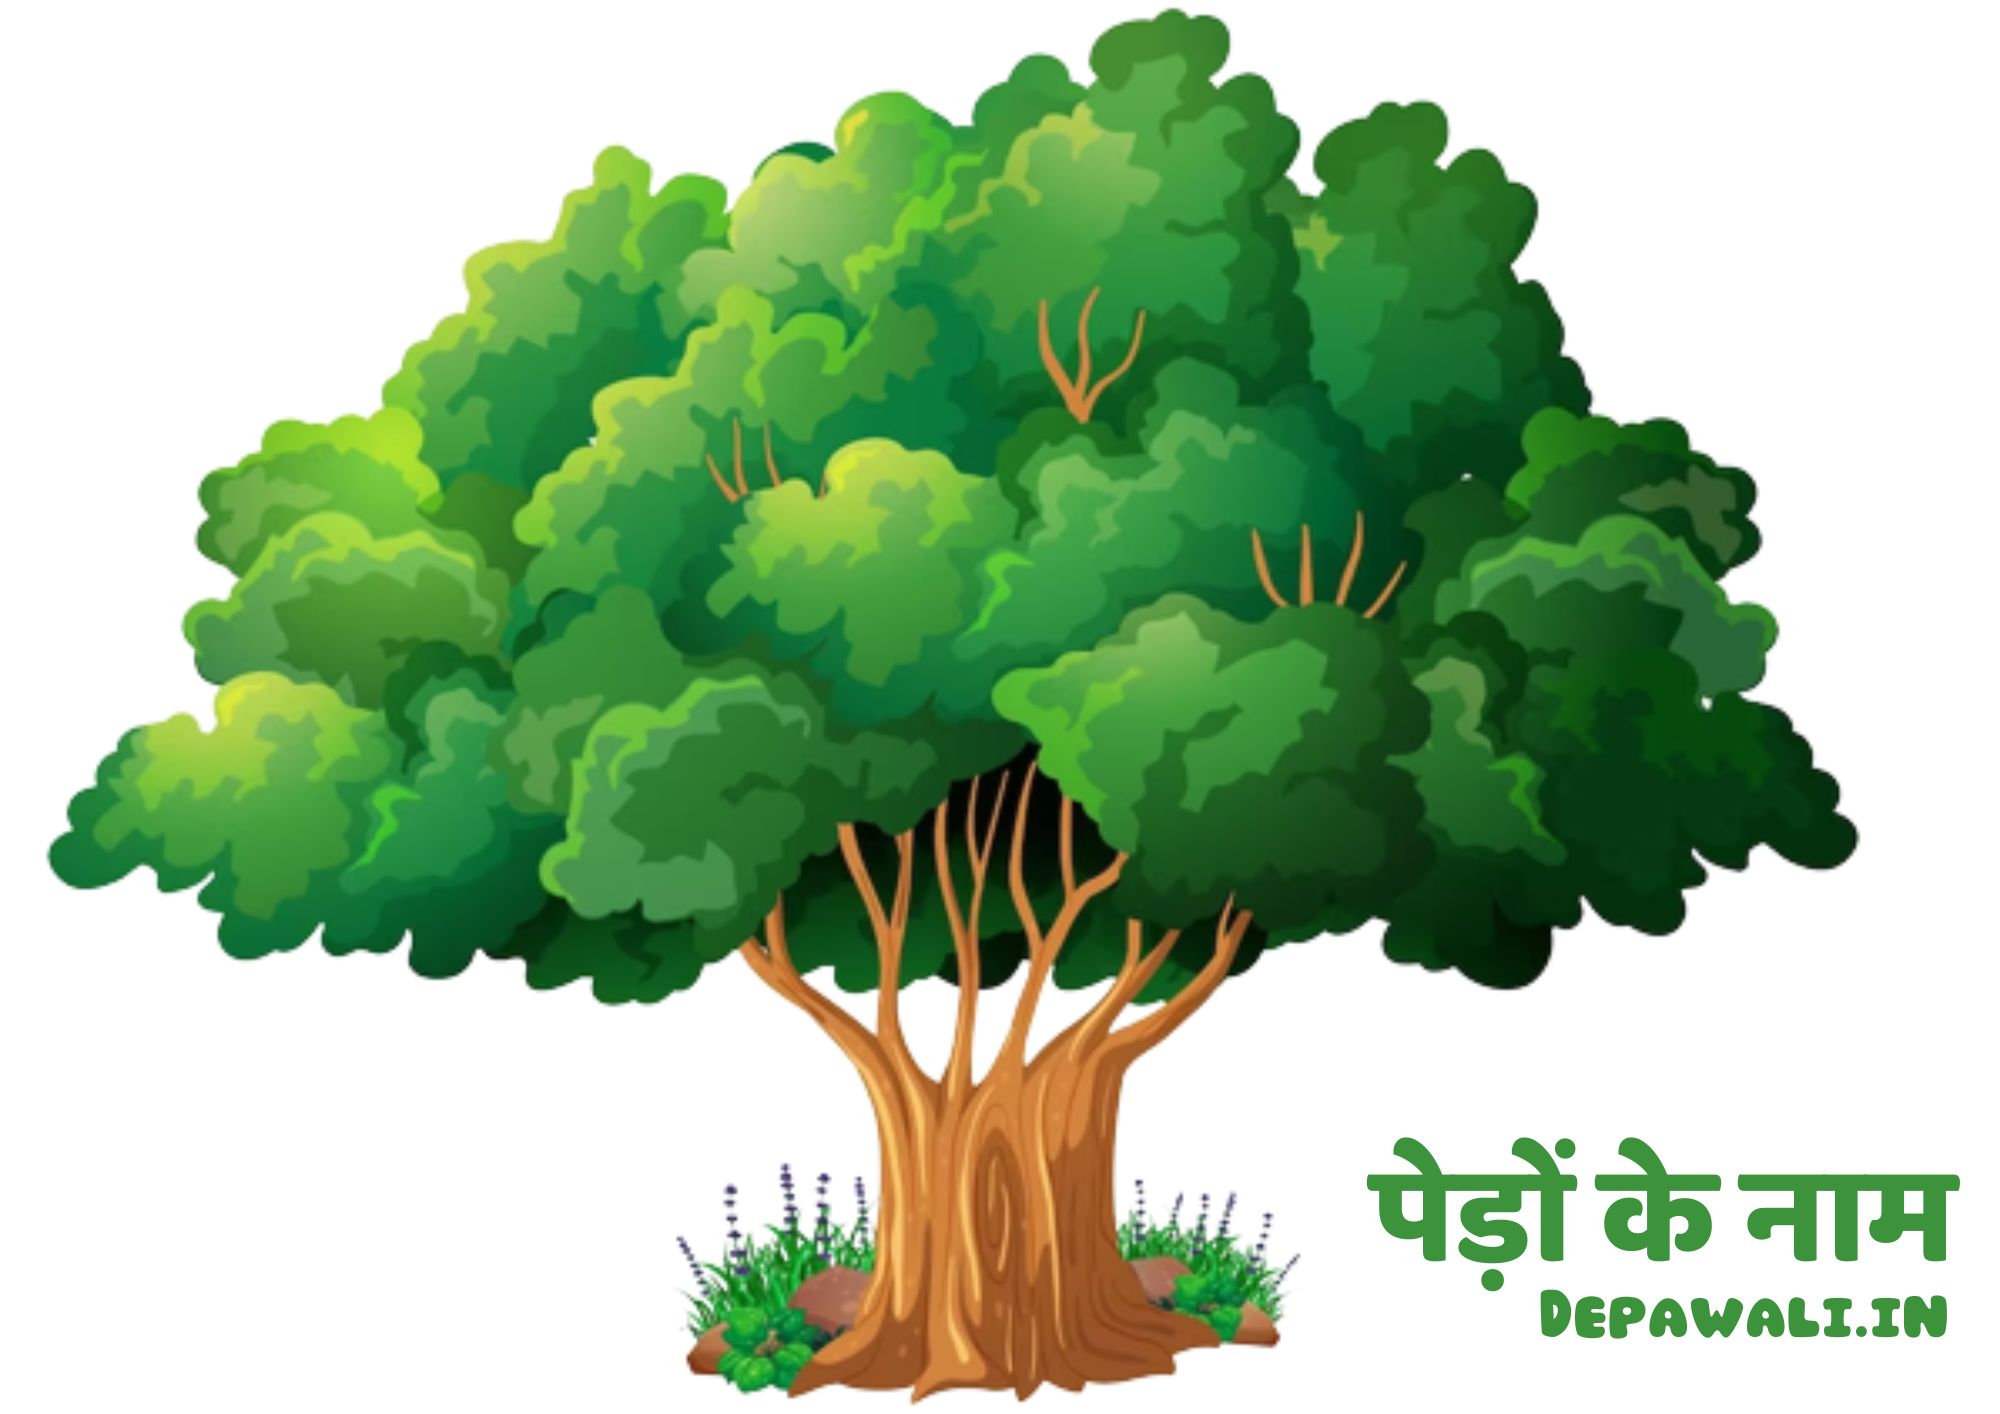 पेड़ों के नाम (ट्री नेम इन हिंदी) - Name Of Tree In Hindi (Tree In Hindi Name) - Trees Name In Hindi And English